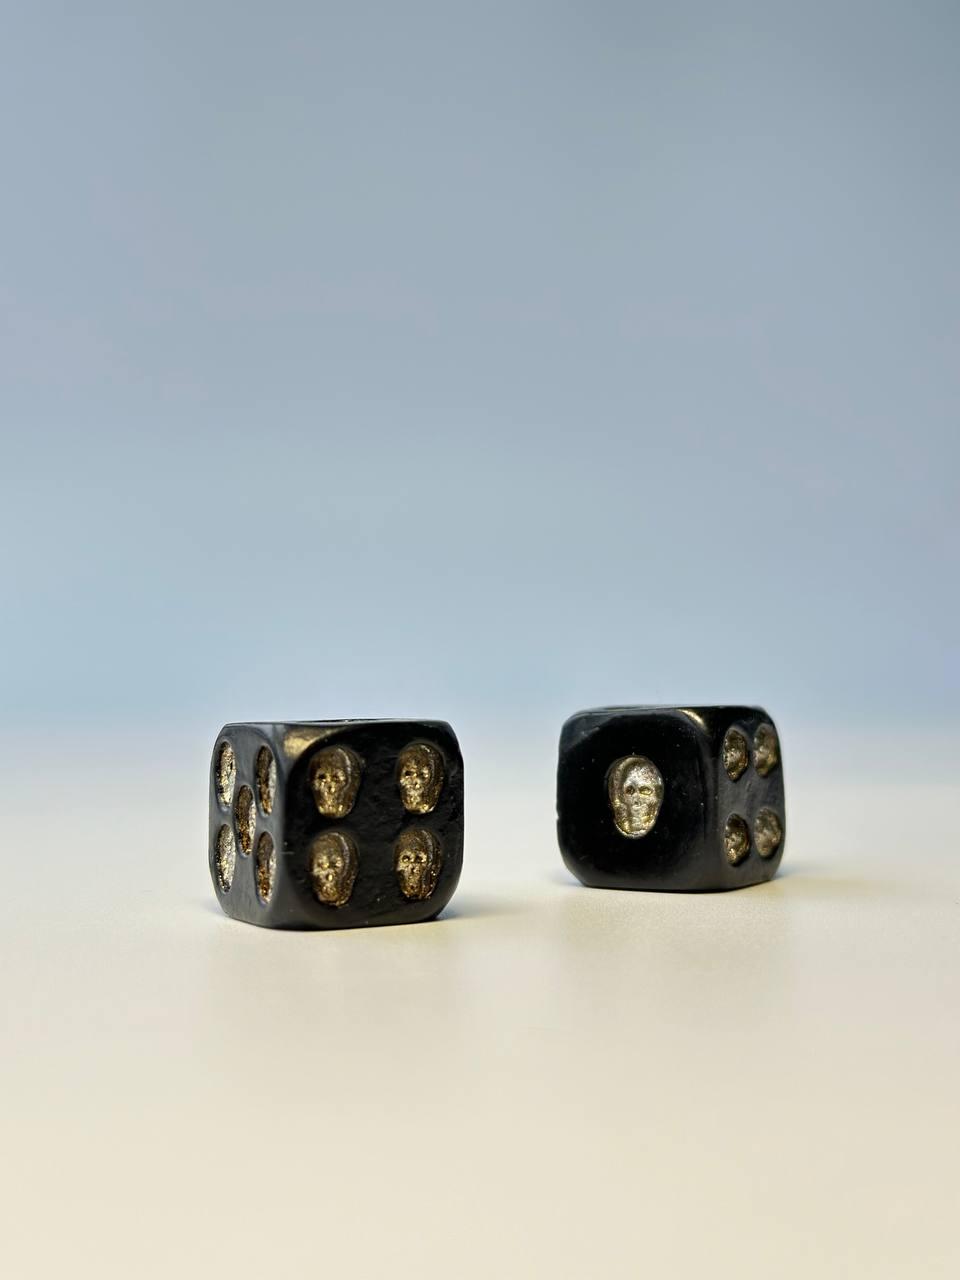 Кубики, кості, зари гральні для настільних ігор, готичний стиль, 18 мм, арт.801818